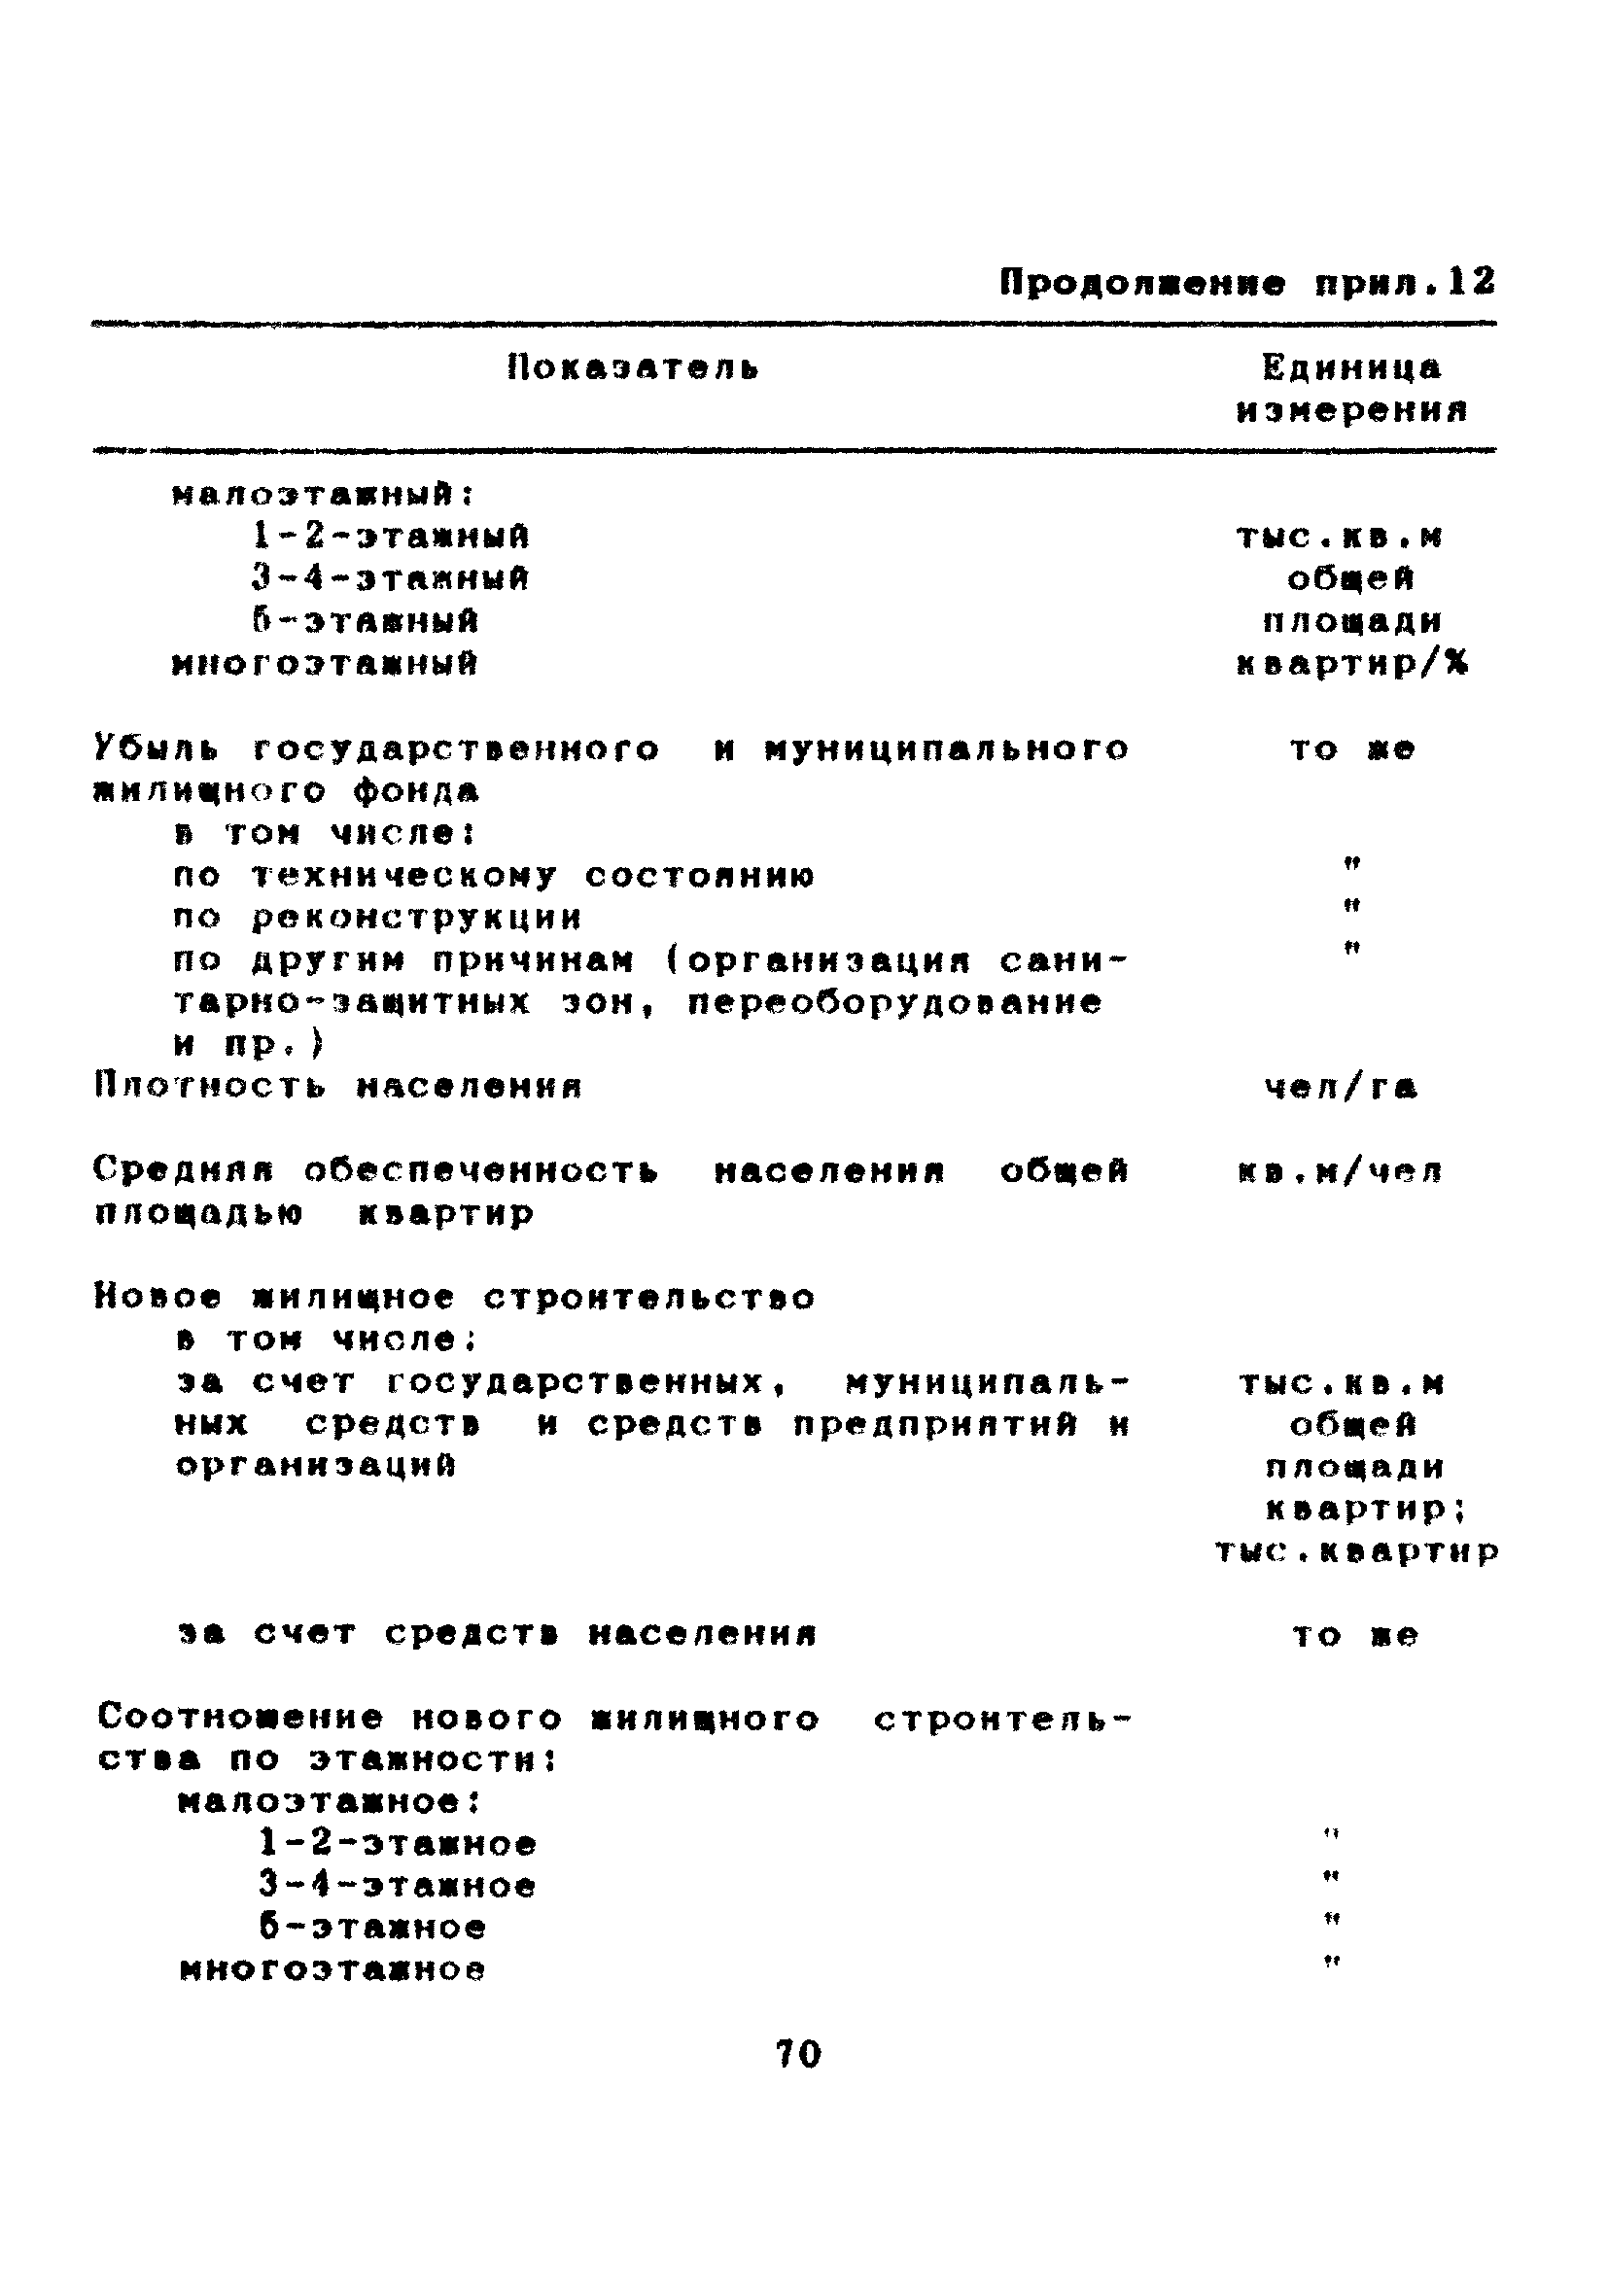 МДС 11-7.2000